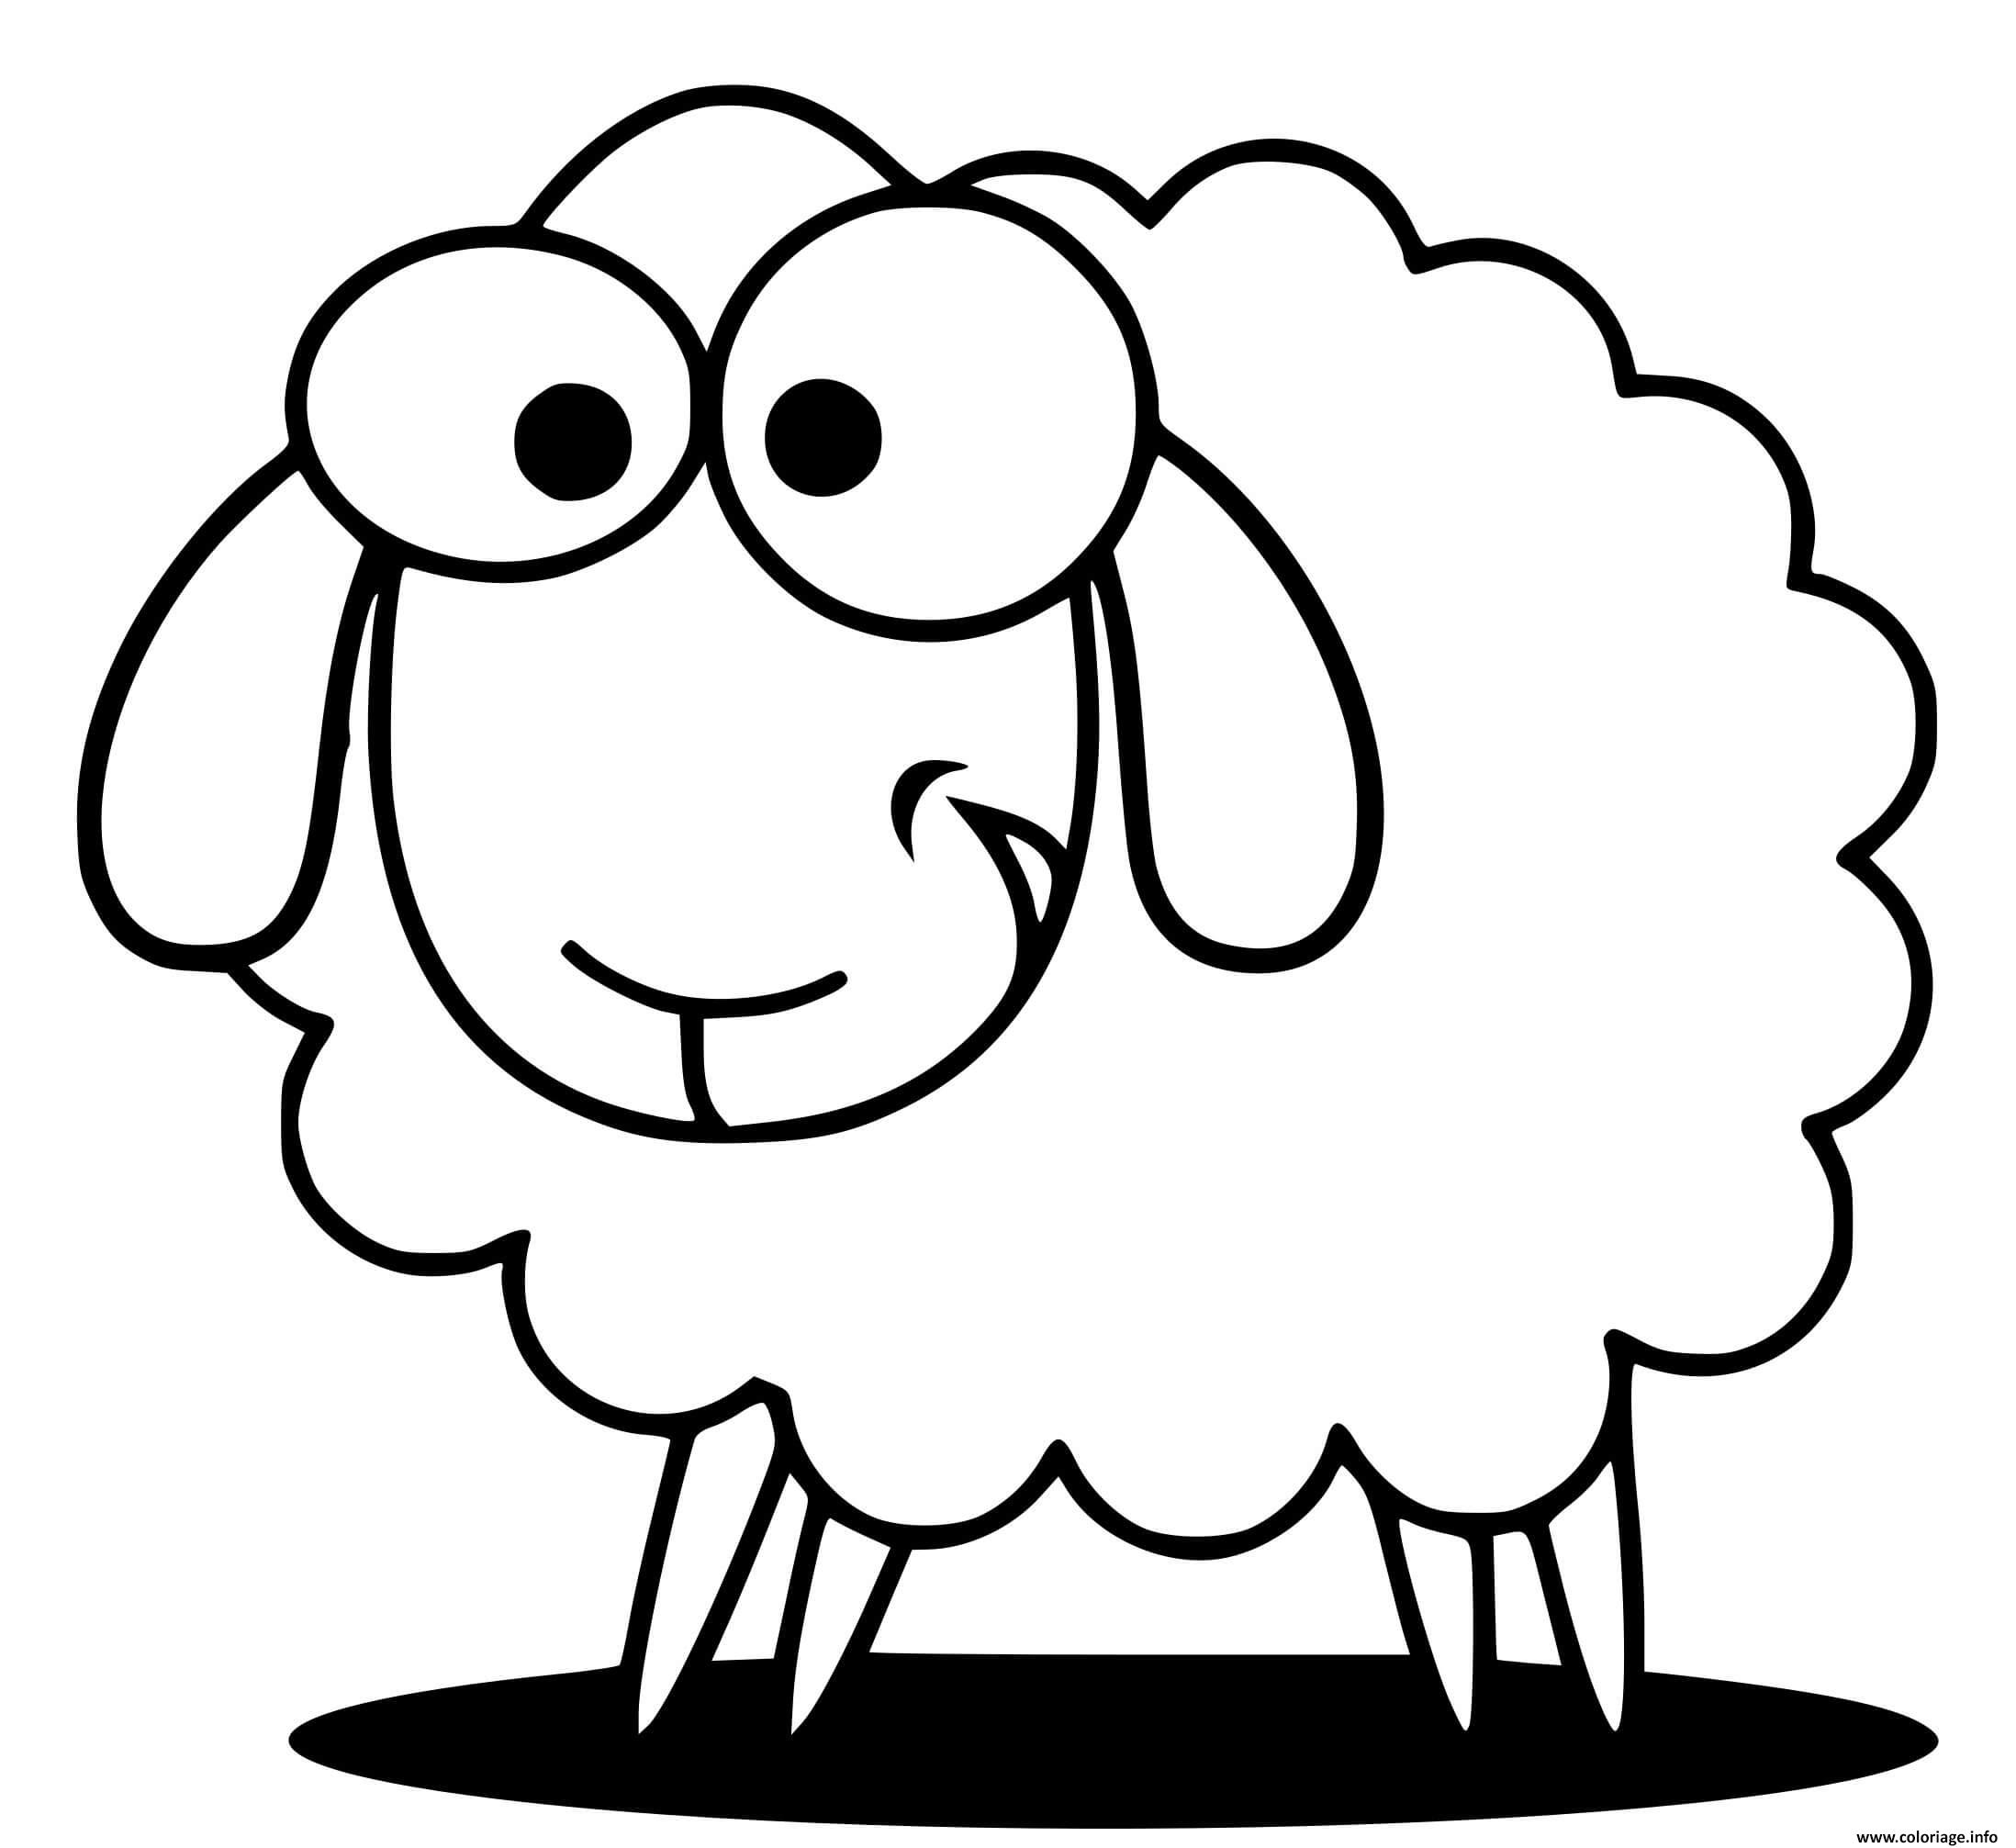 Coloriage Mouton Rigolo Avec Le Sourire Dessin Mouton A Imprimer